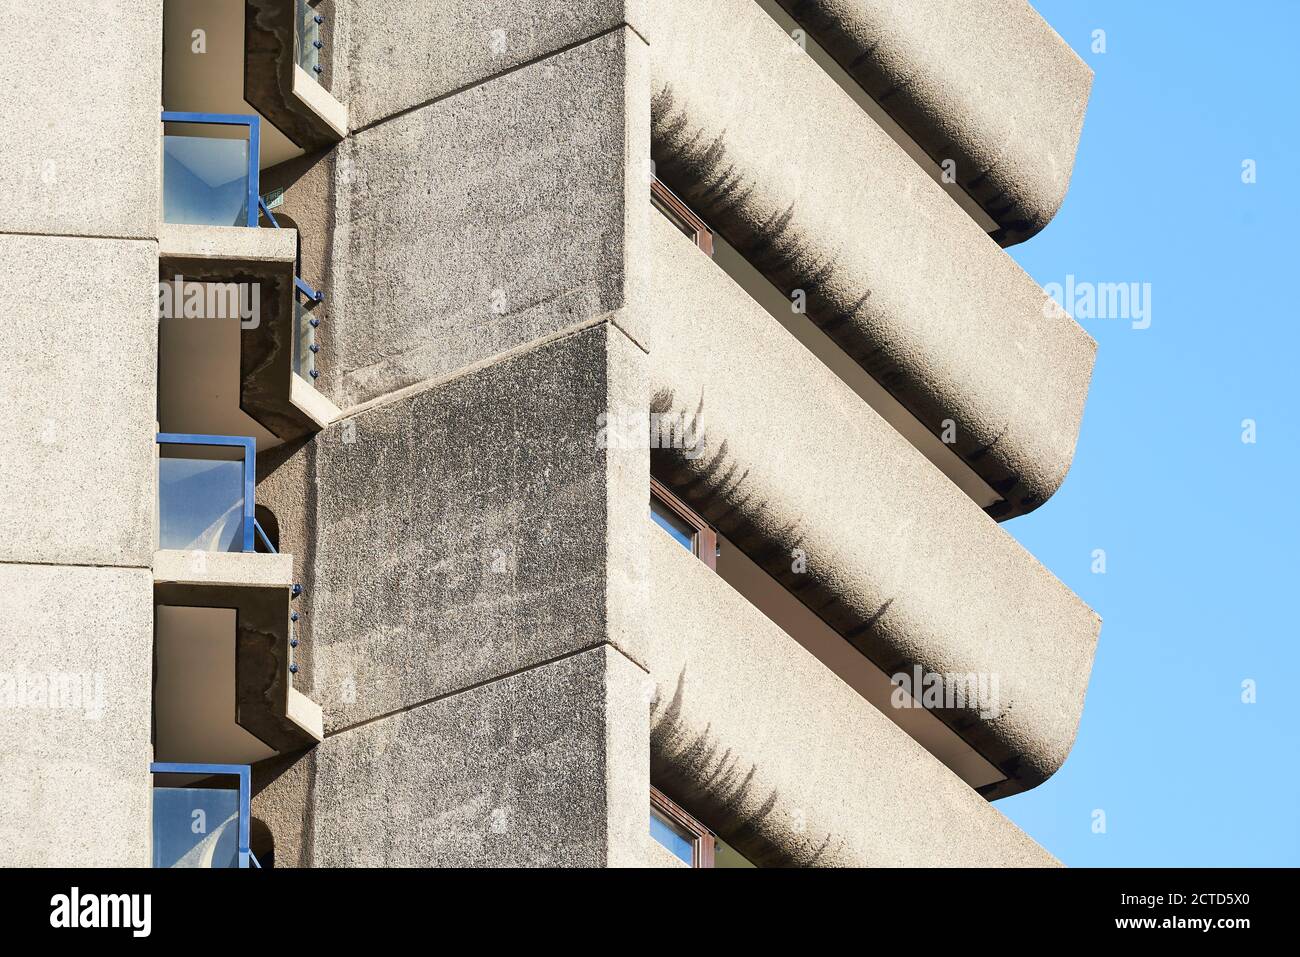 Äußere Detail von Lauderdale Tower, The Barbican Estate, City of London UK. Entworfen von den Architekten Chamberlin, Powell und Bon. Fertiggestellt im Jahr 1974. Stockfoto